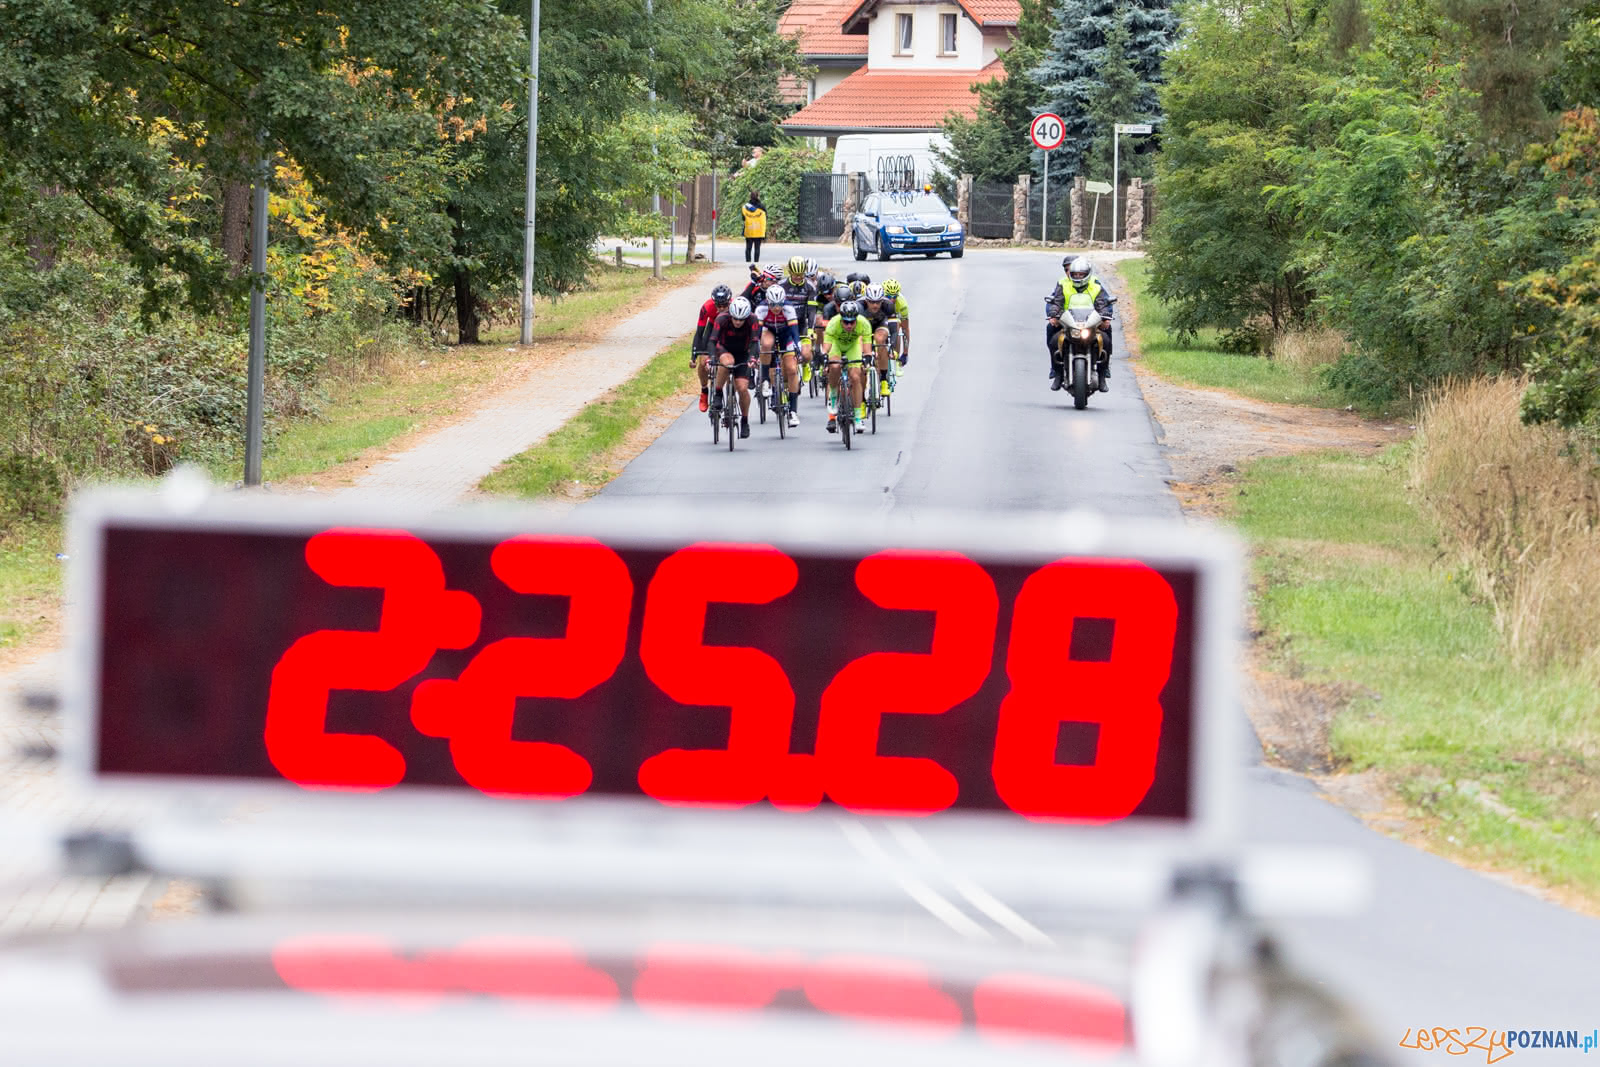 Bike Challenge 2018 - Poznań 23.09.2018 r.  Foto: LepszyPOZNAN.pl / Paweł Rychter